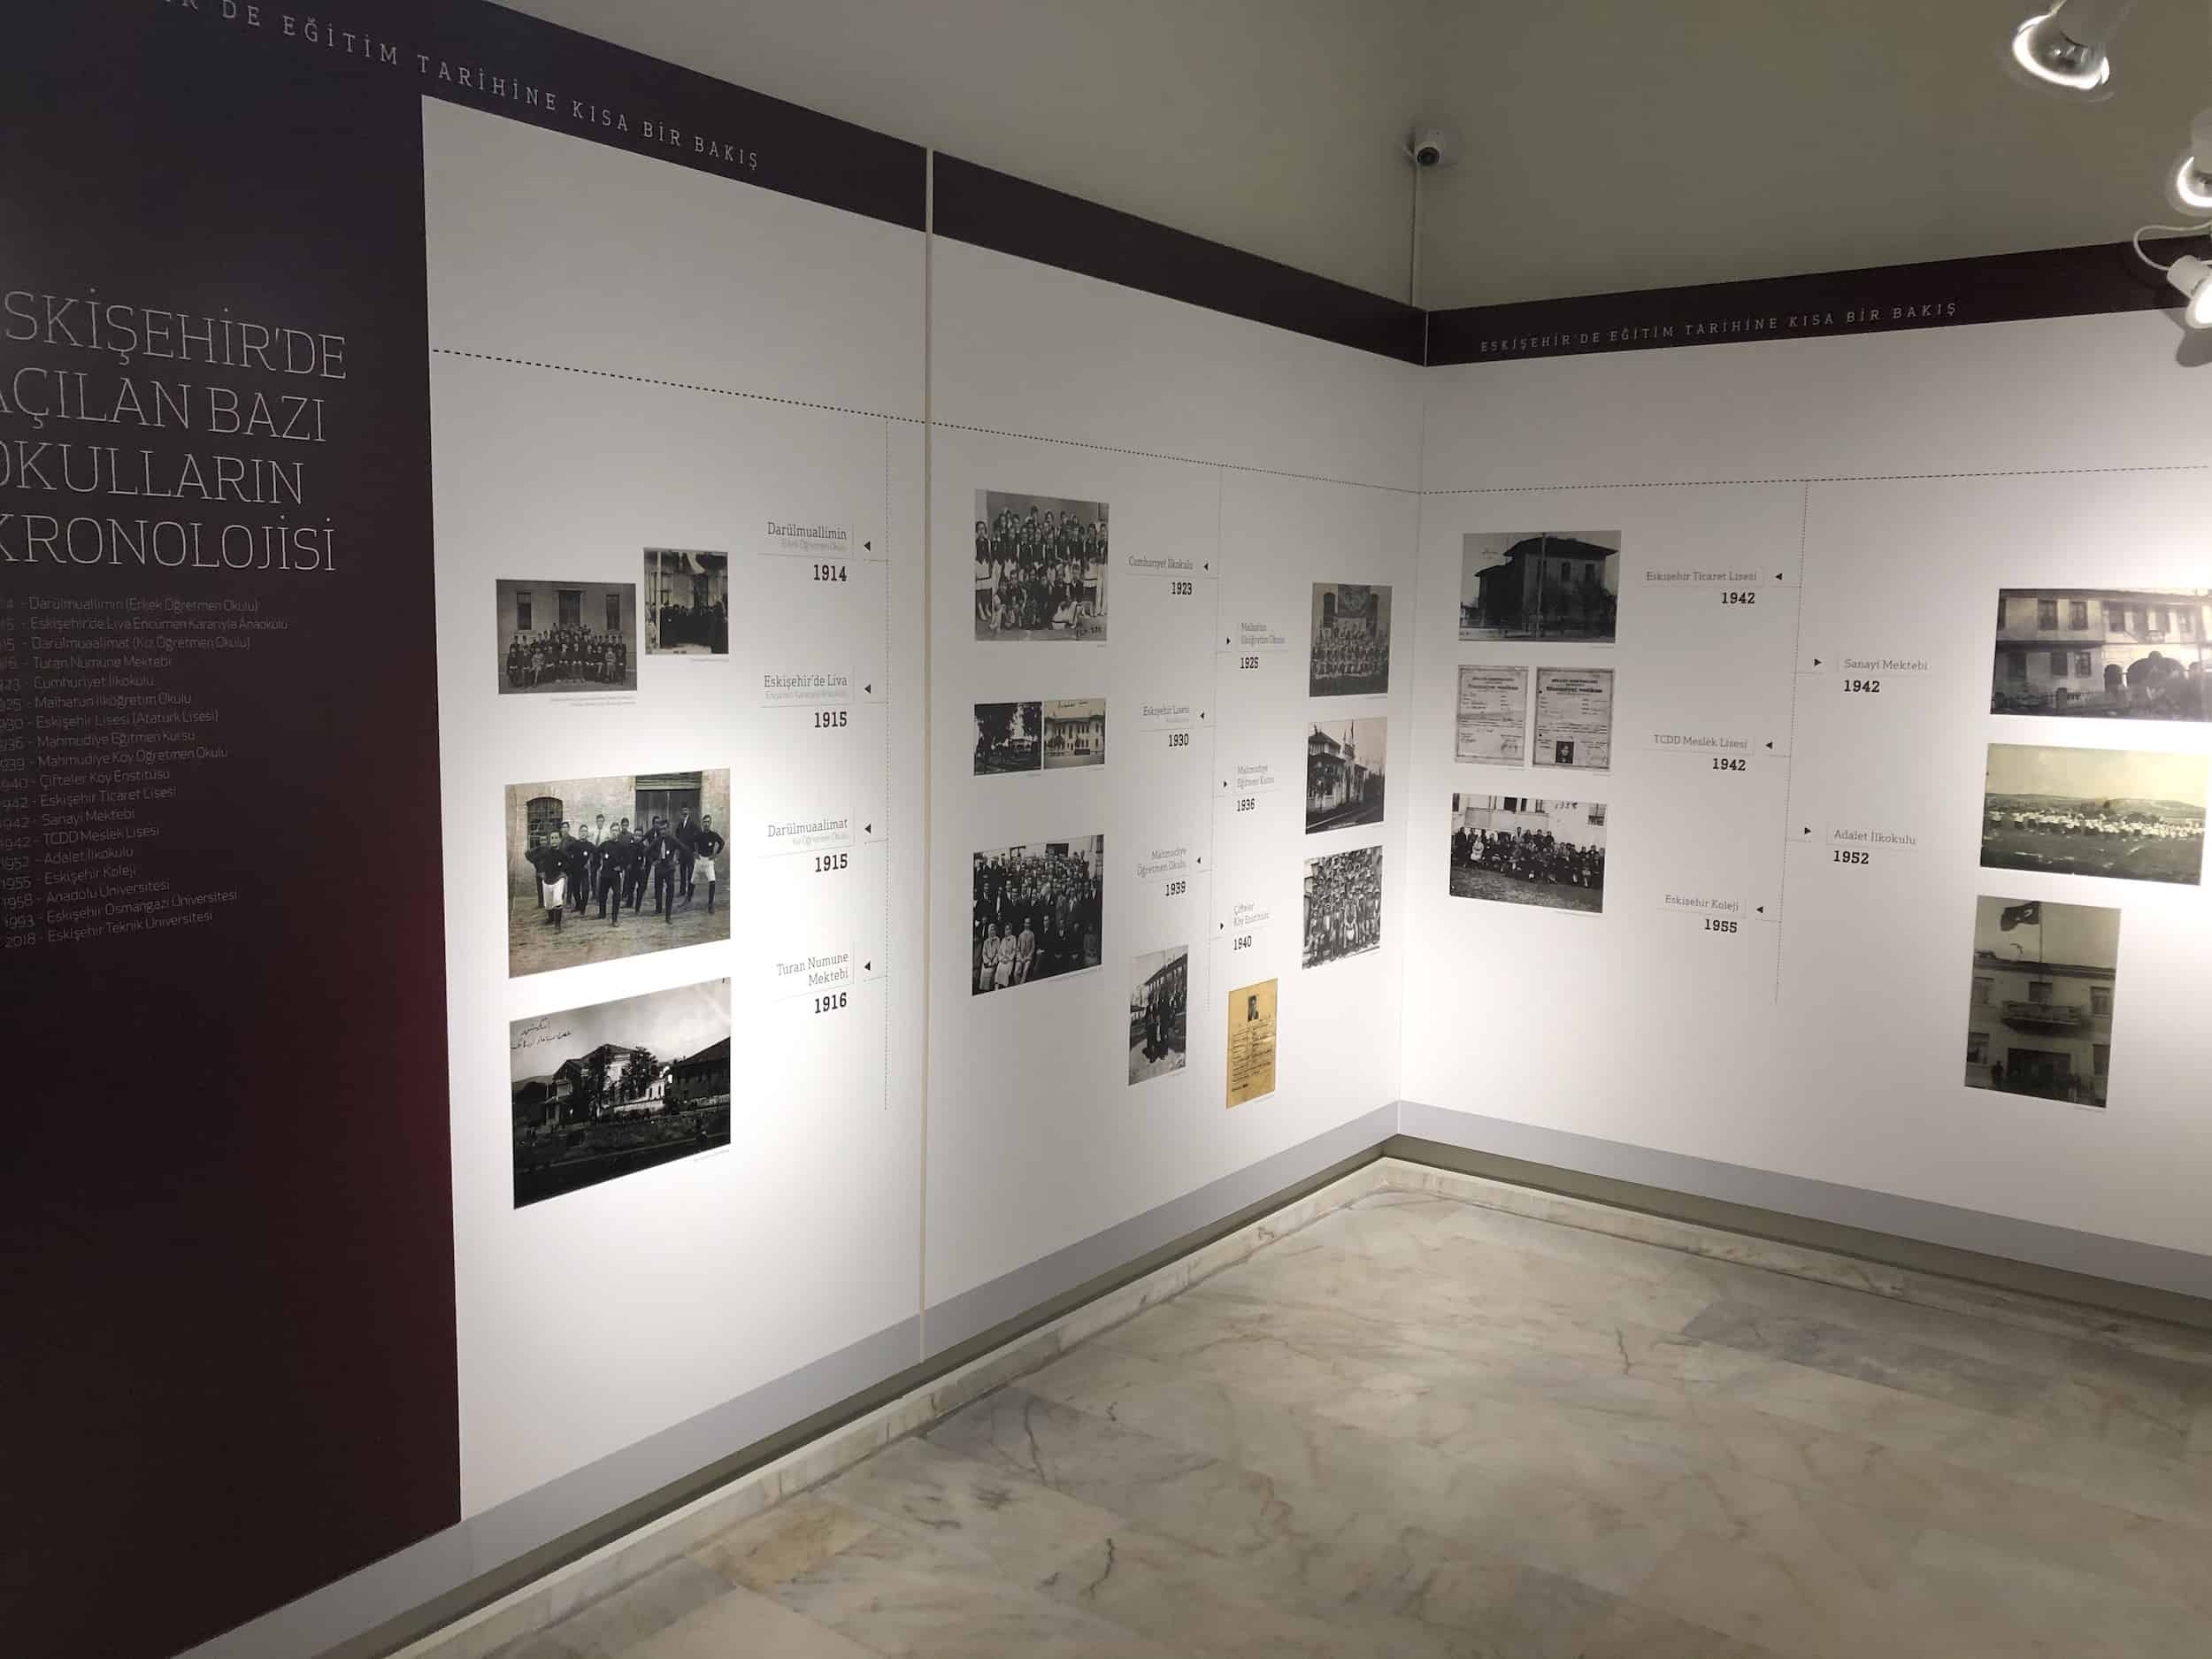 Turan Numune School timeline at the Anadolu University Republic History Museum in Eskişehir, Turkey